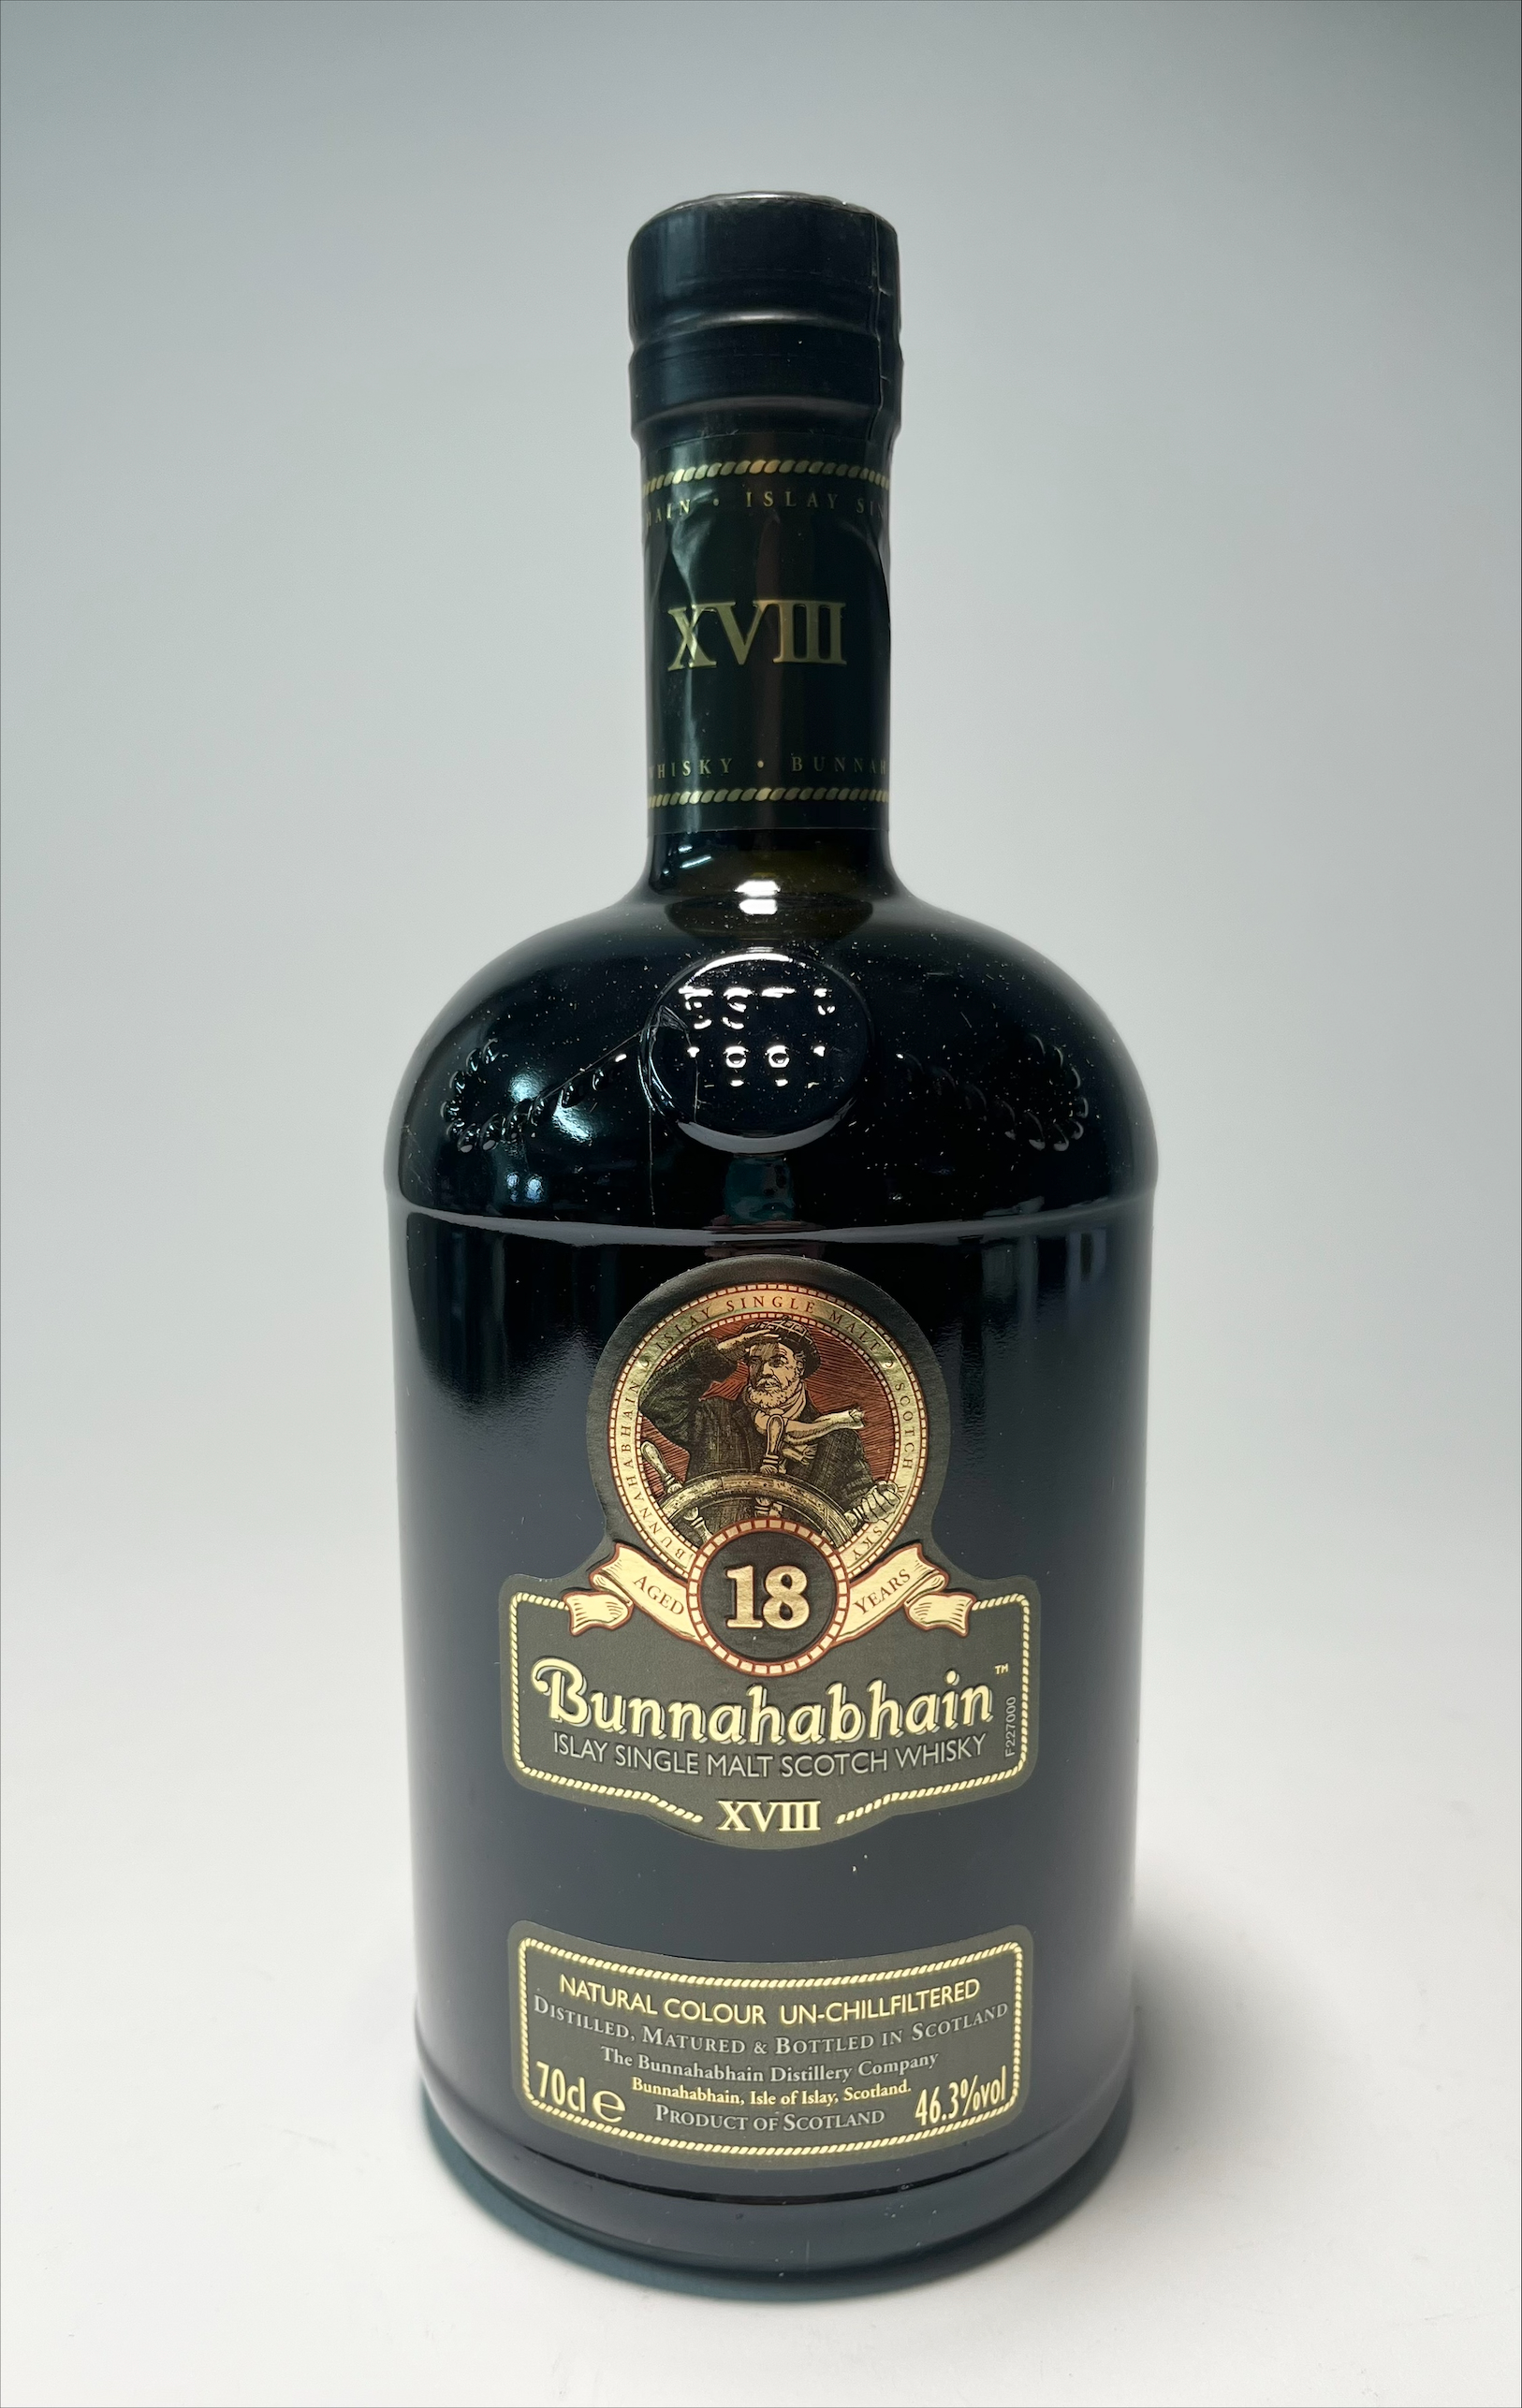 A bottle of Bunnahabhain Islay Single Malt Scotch Whisky XVIII, The Bunnahabhain Distillery - Image 2 of 2